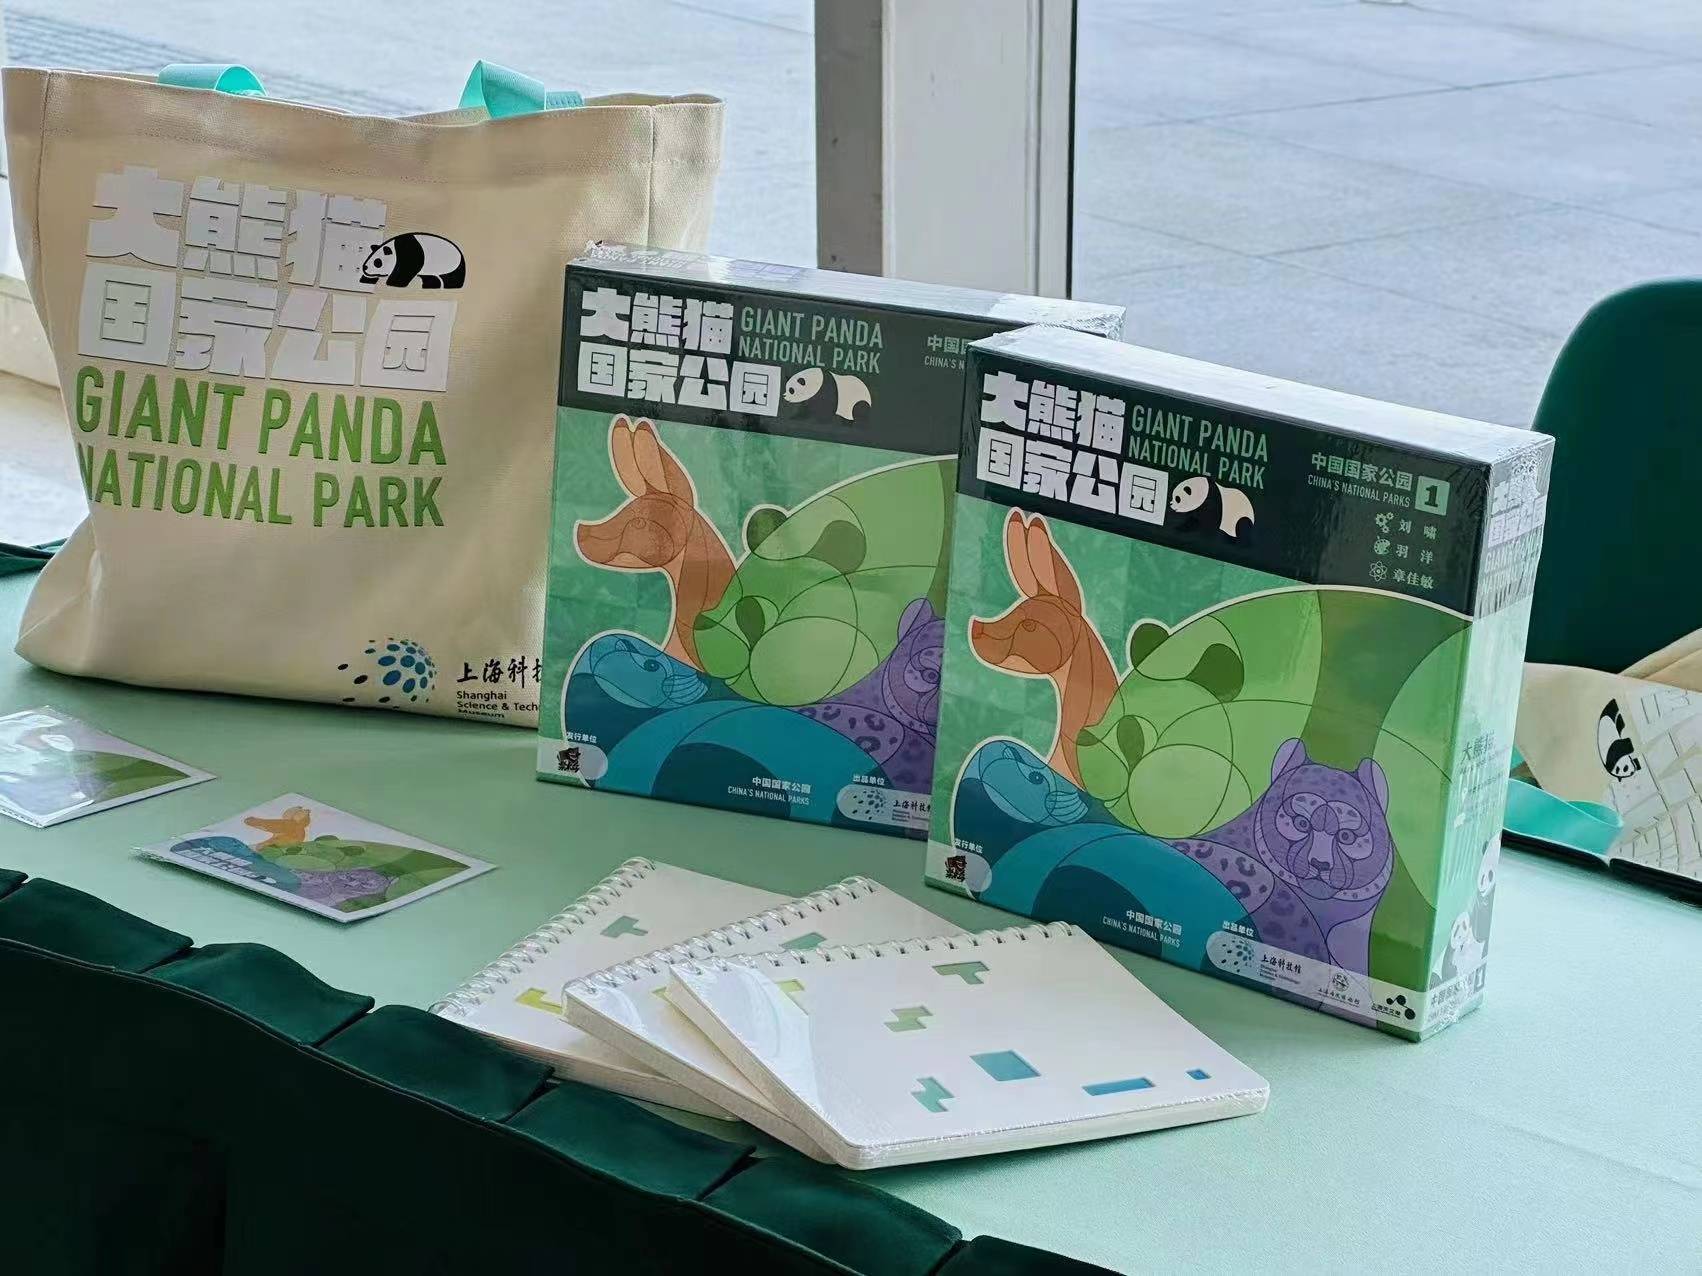 流浪熊猫游戏苹果版:上海科技馆三年开发原创科普游戏58款，一批头部游戏公司“入圈”